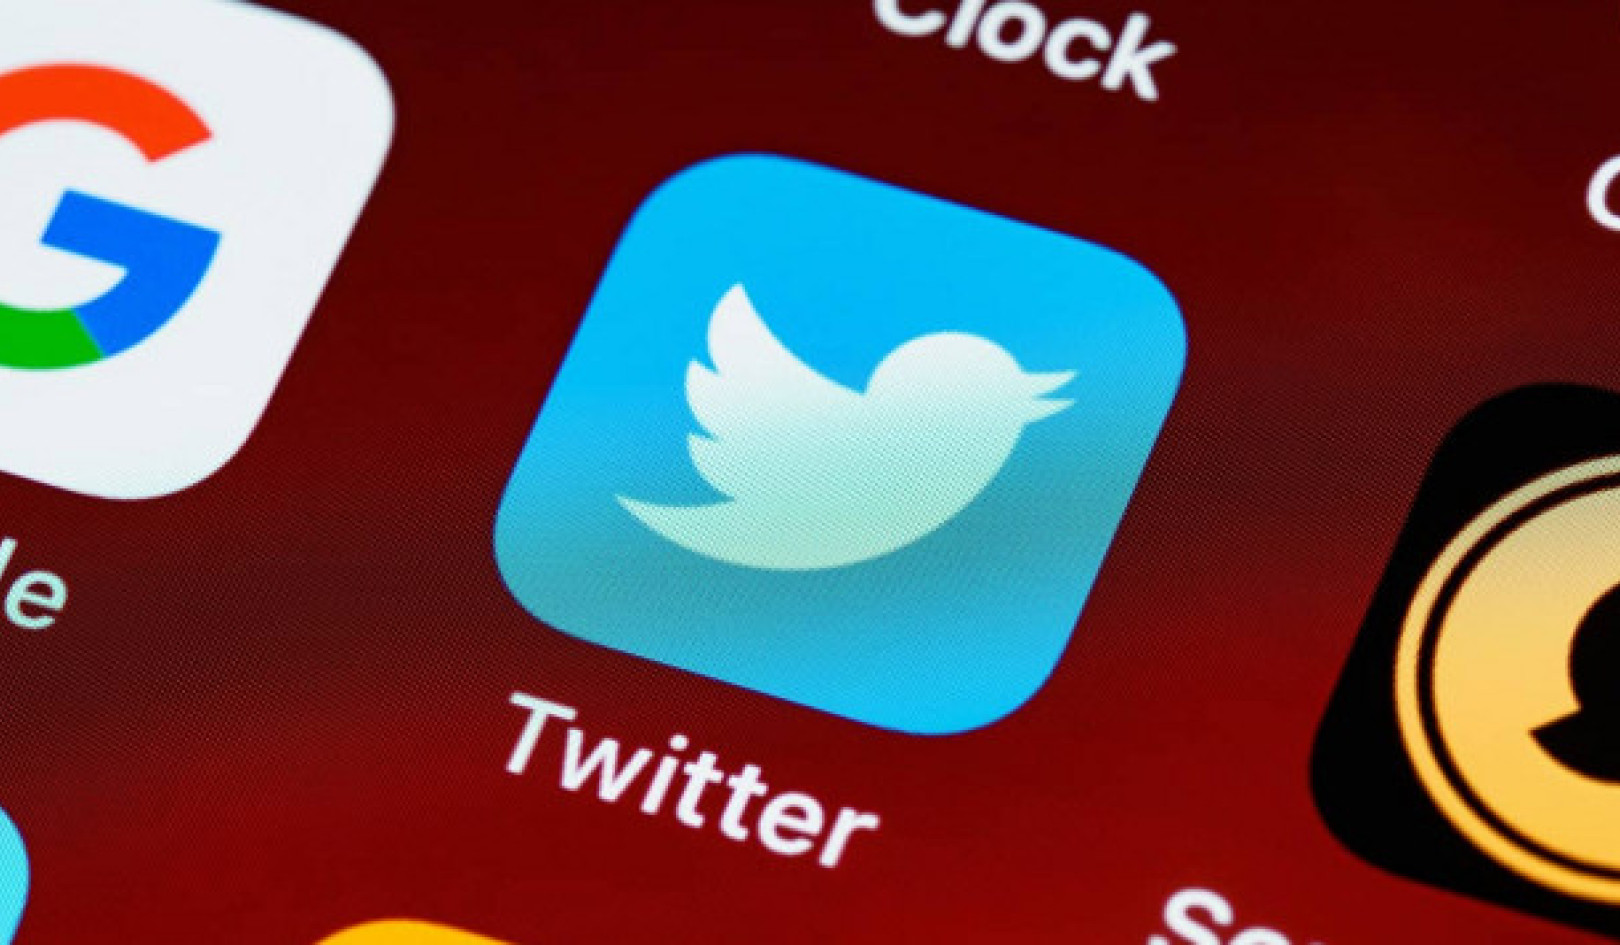 Líderes políticos en Twitter: Tendencias contrastantes en contenido no confiable